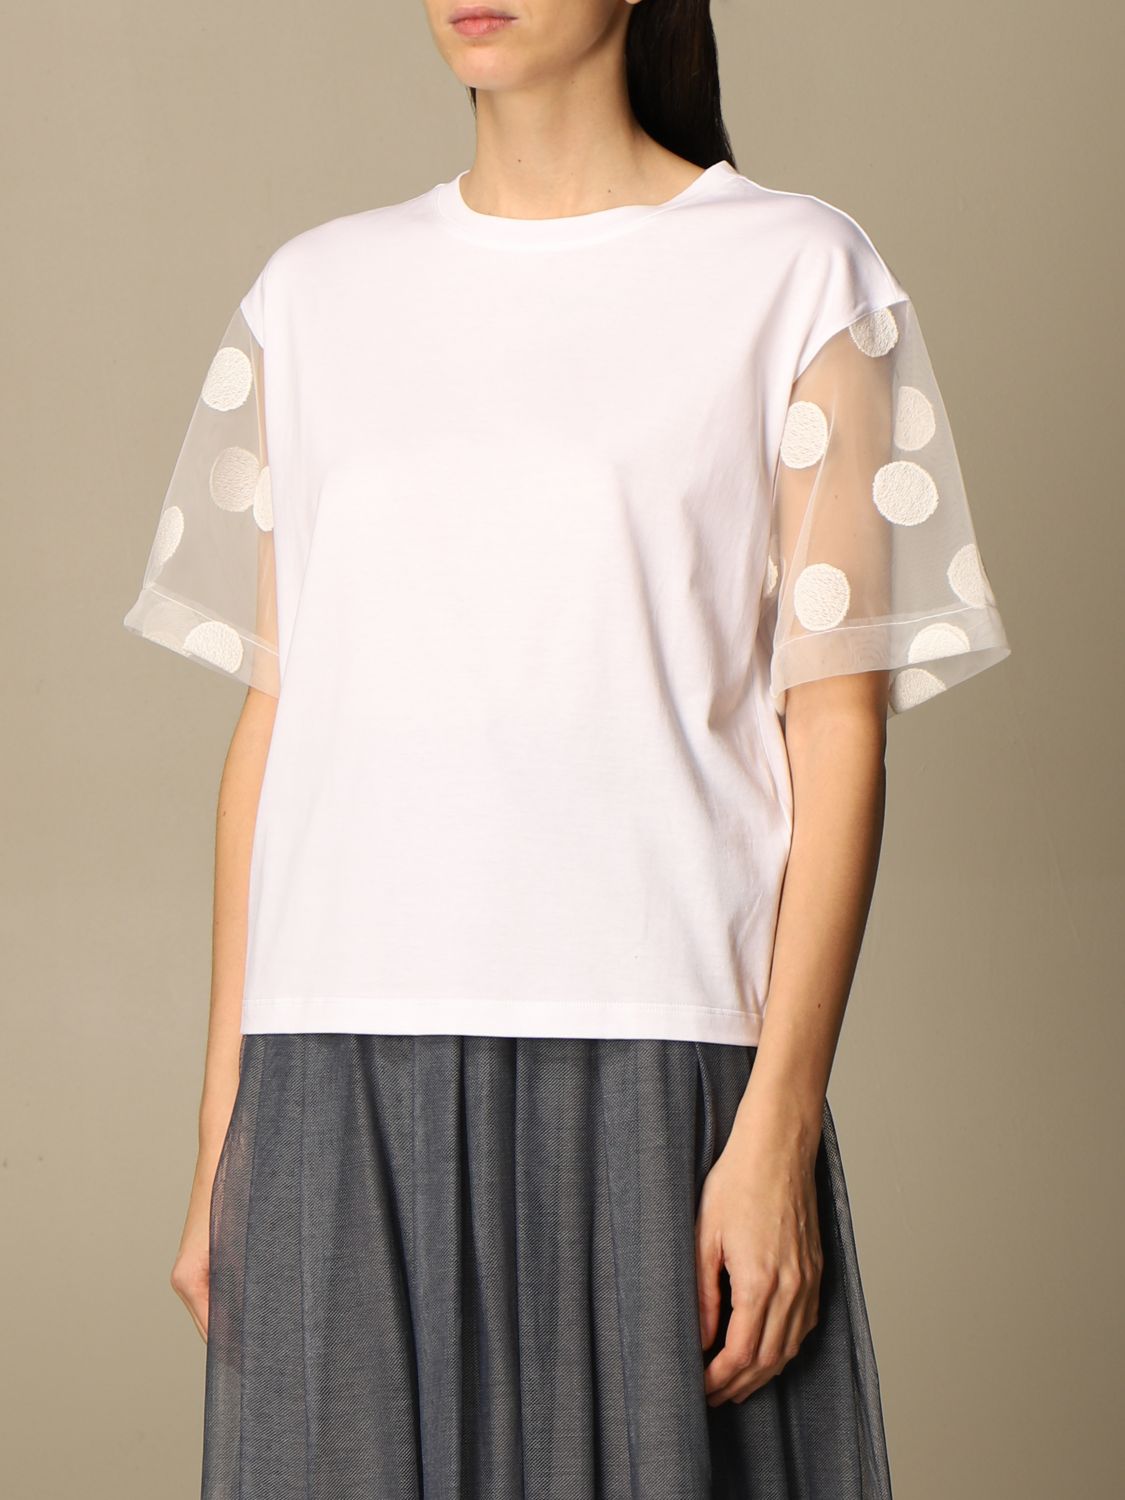 Fabiana Filippi cotton t-shirt with polka dot sleeves